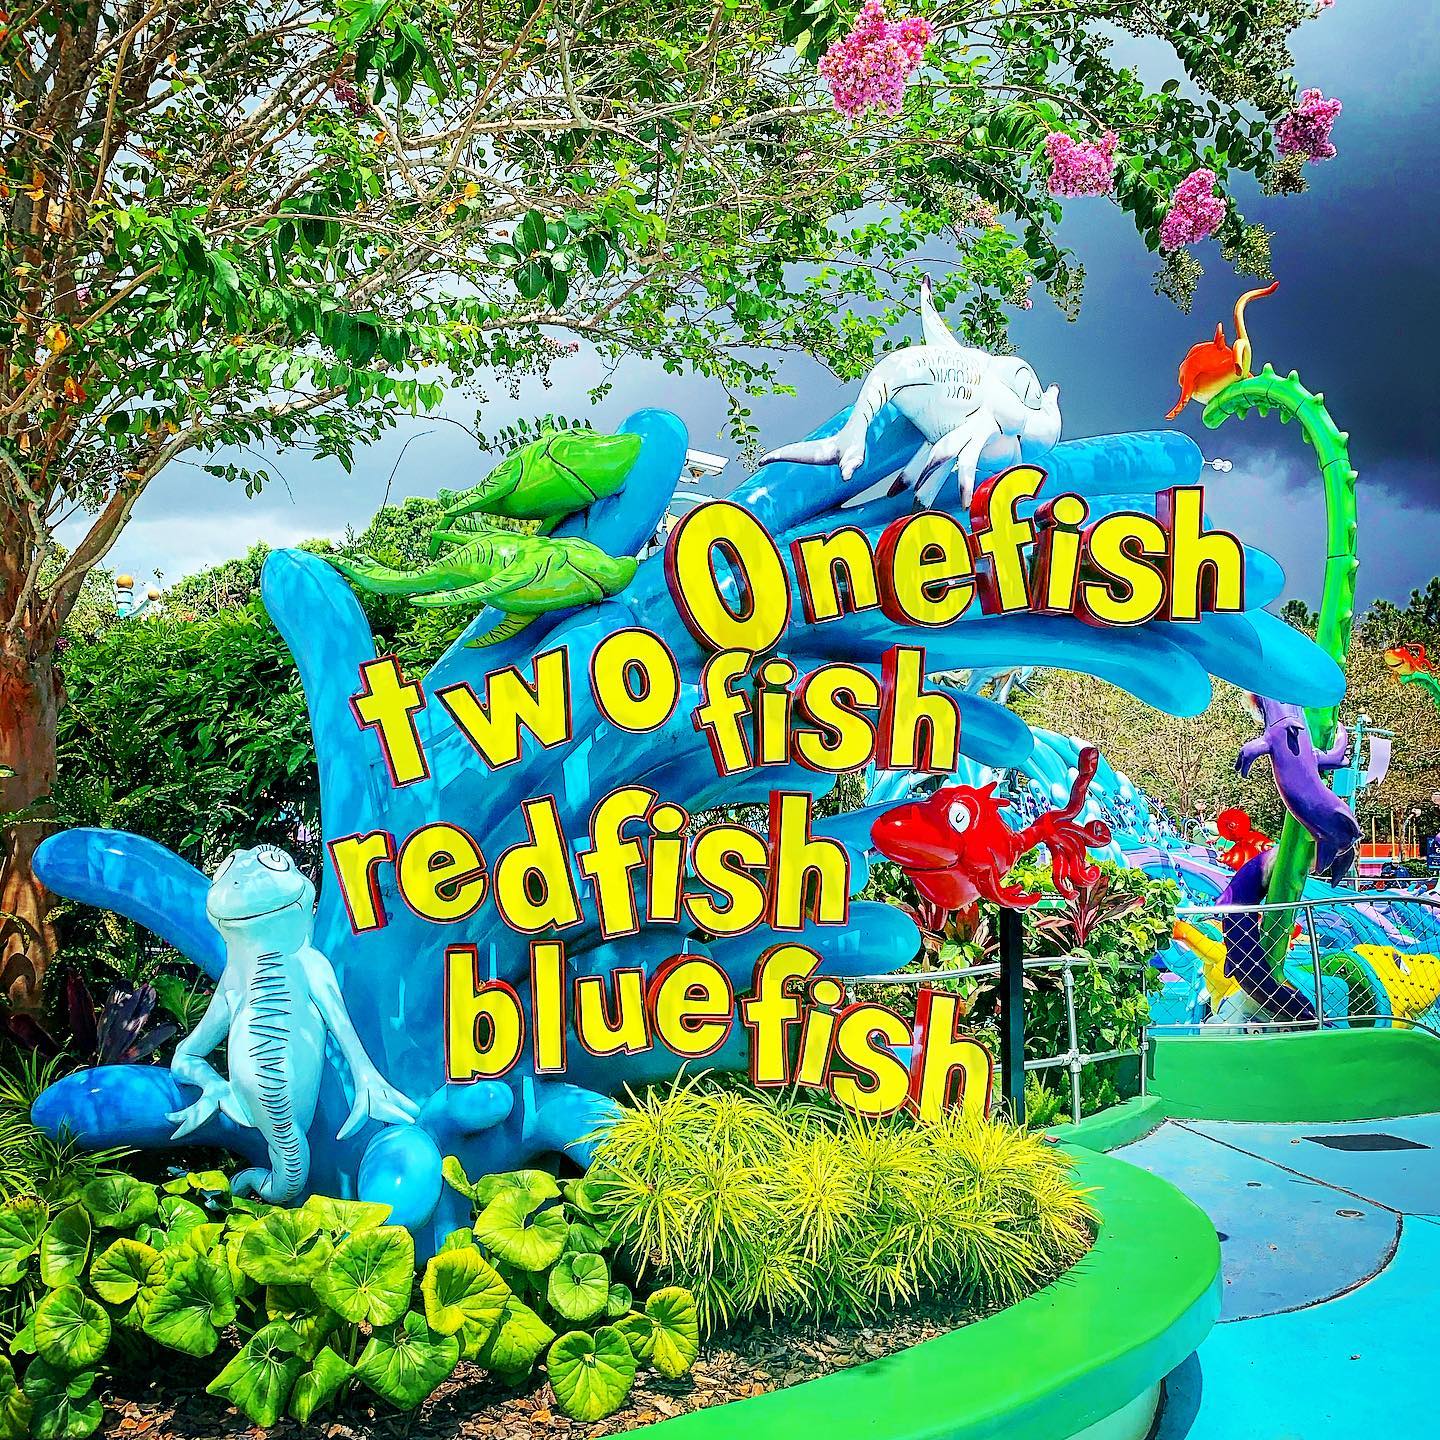 Un poisson, deux poissons, poisson rouge, poisson bleu - Attraction Islands of Adventure